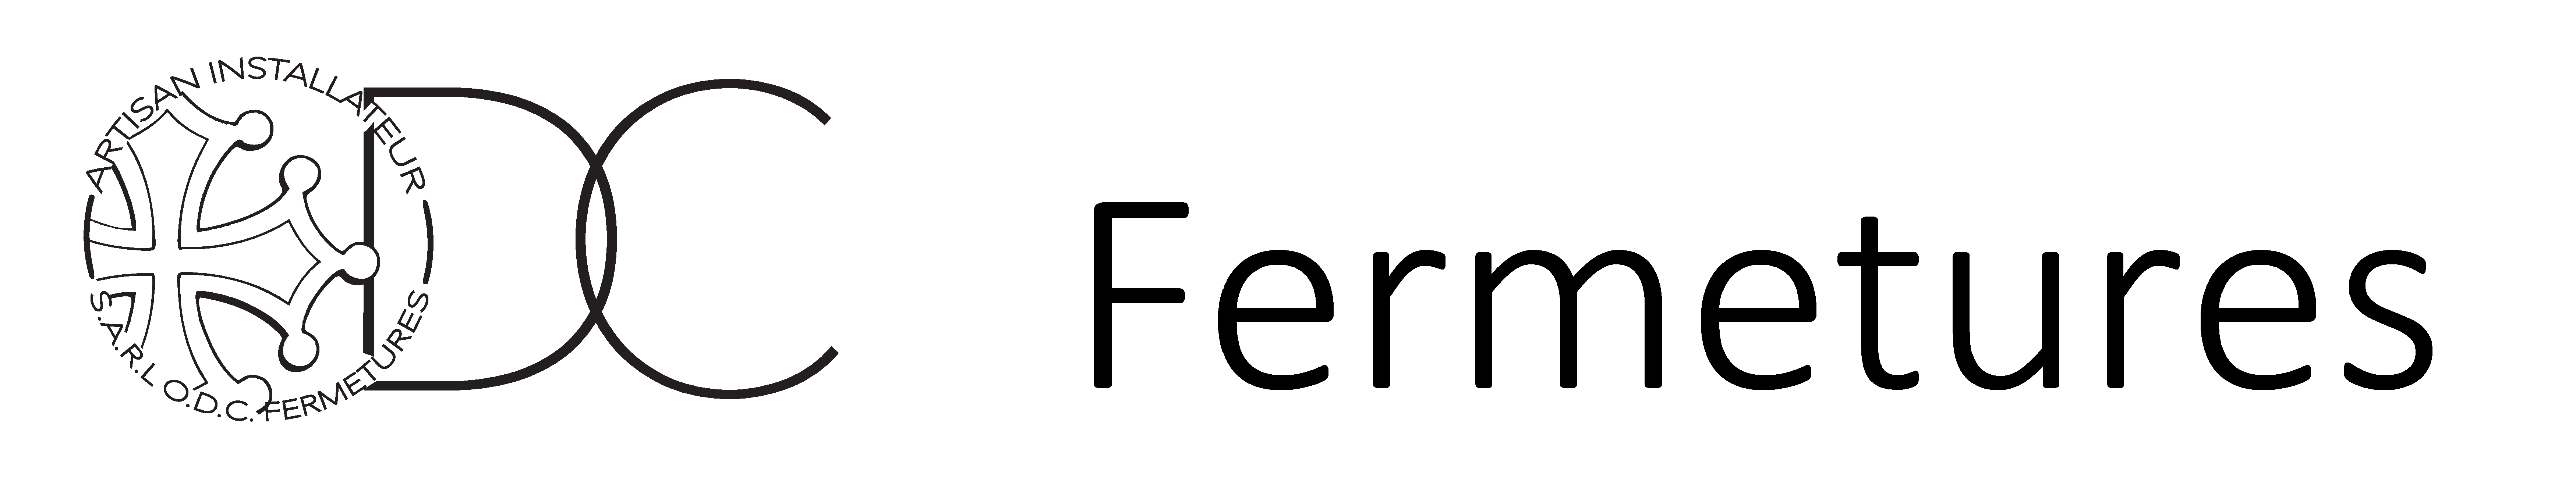 Logo ODC Fermetures